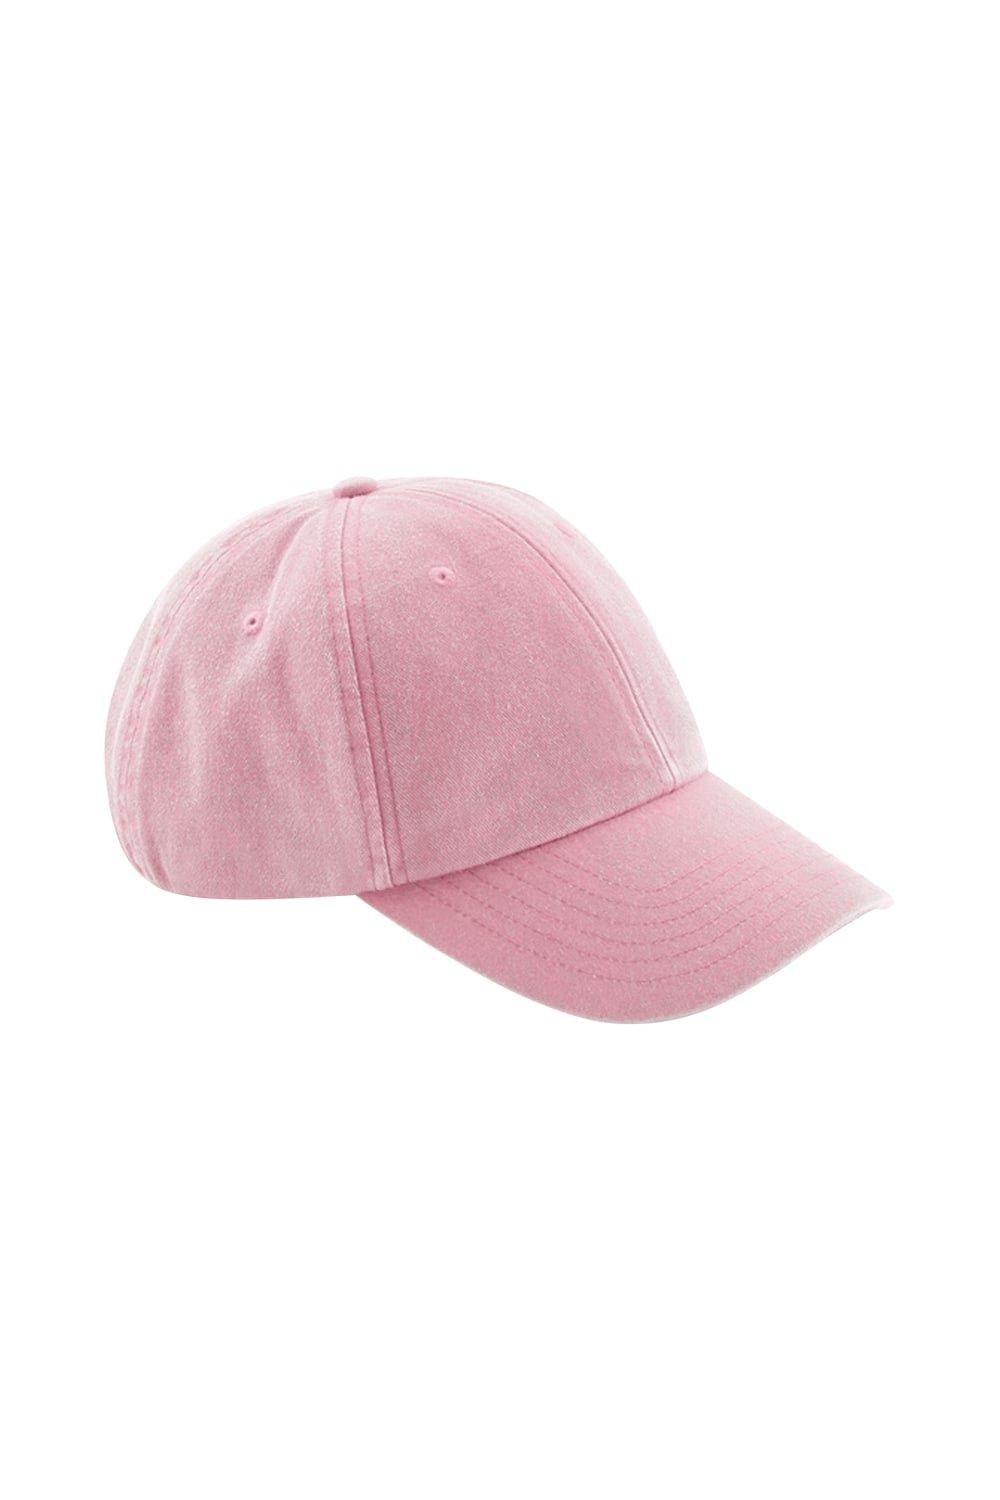 Винтажная низкопрофильная кепка Beechfield, розовый